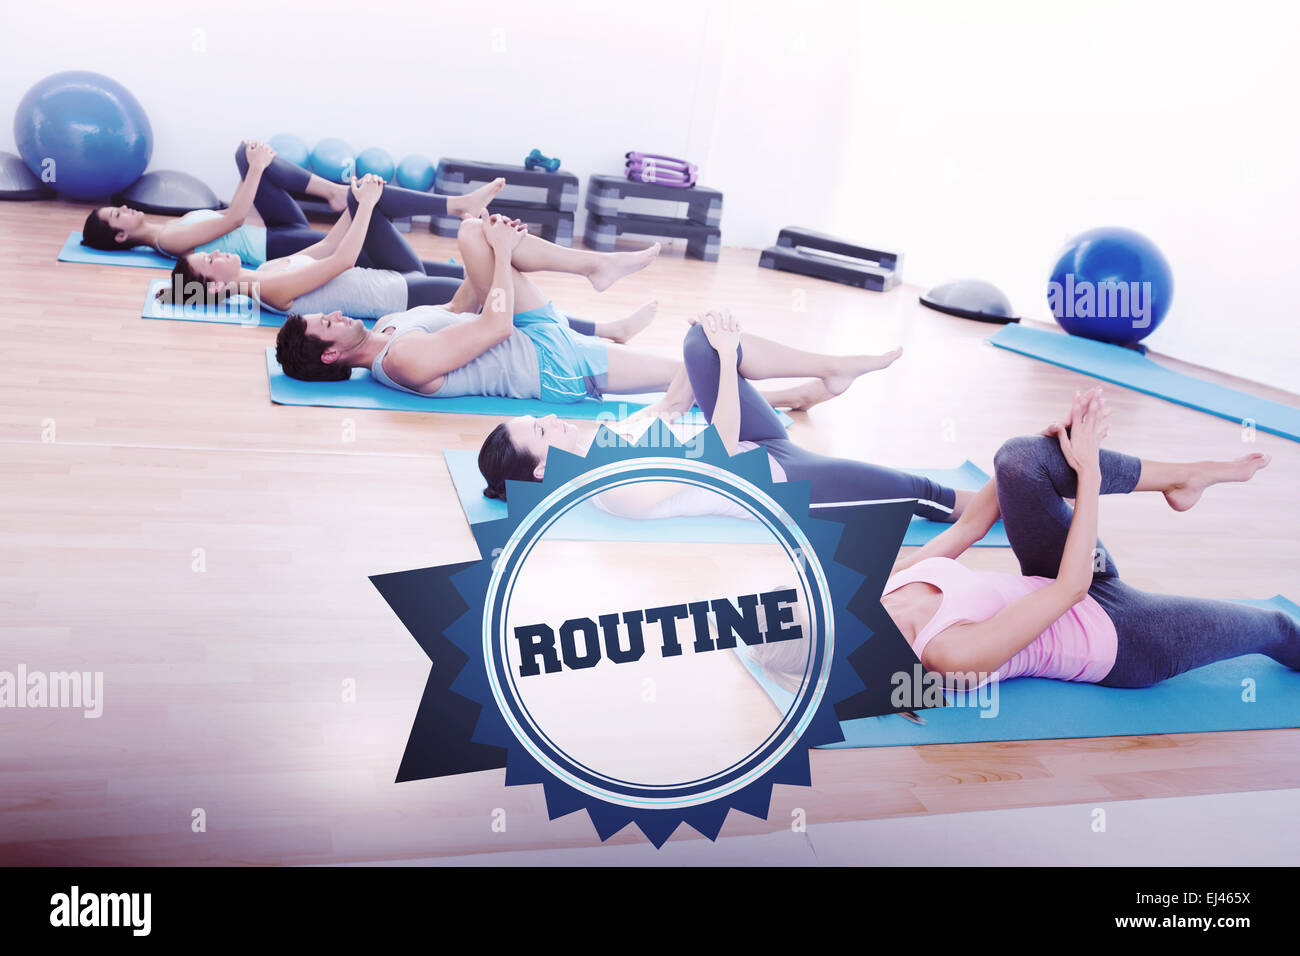 La parola di routine e gli sportivi stretching gambe Foto Stock